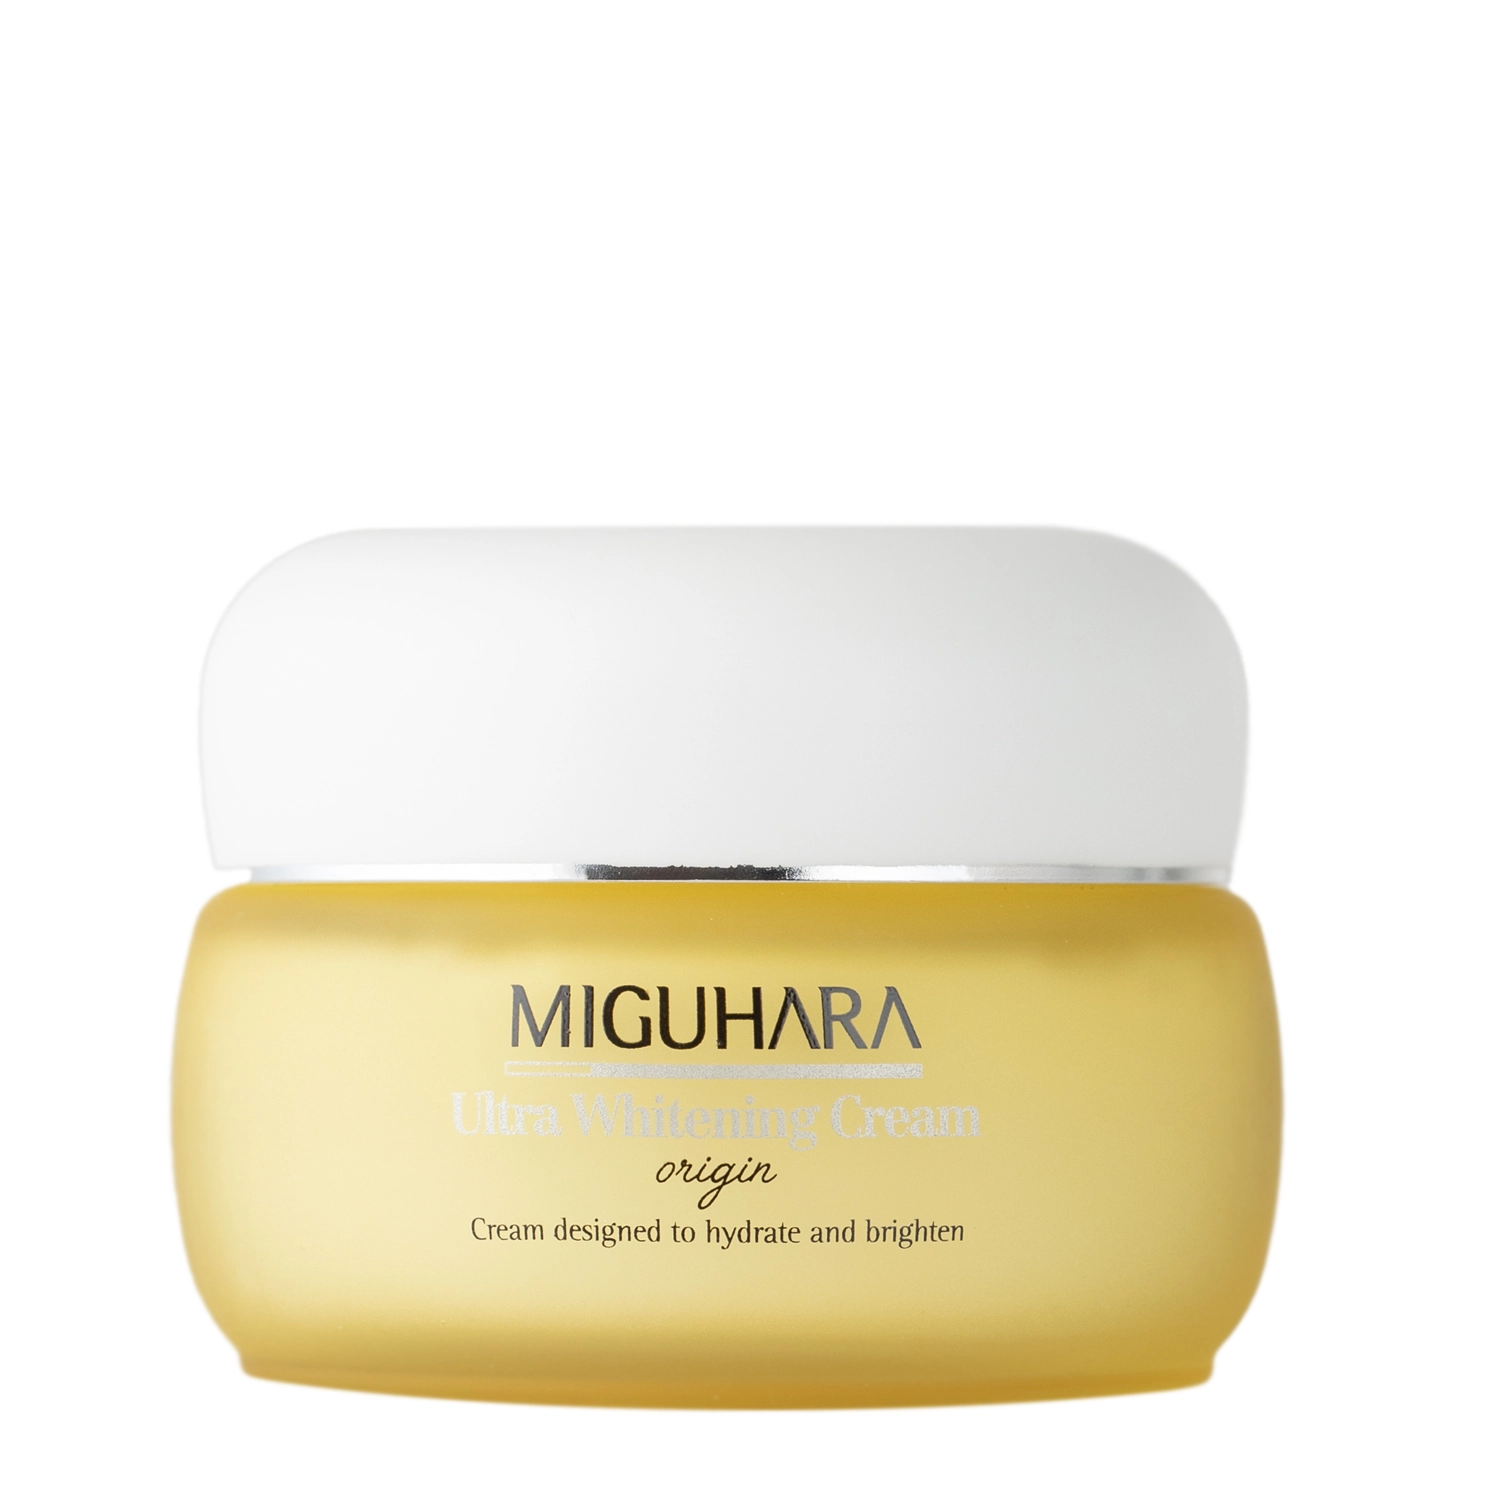 Miguhara - Ultra Whitening Cream Origin - Осветляющий крем для лица с ниацинамидом - 50ml